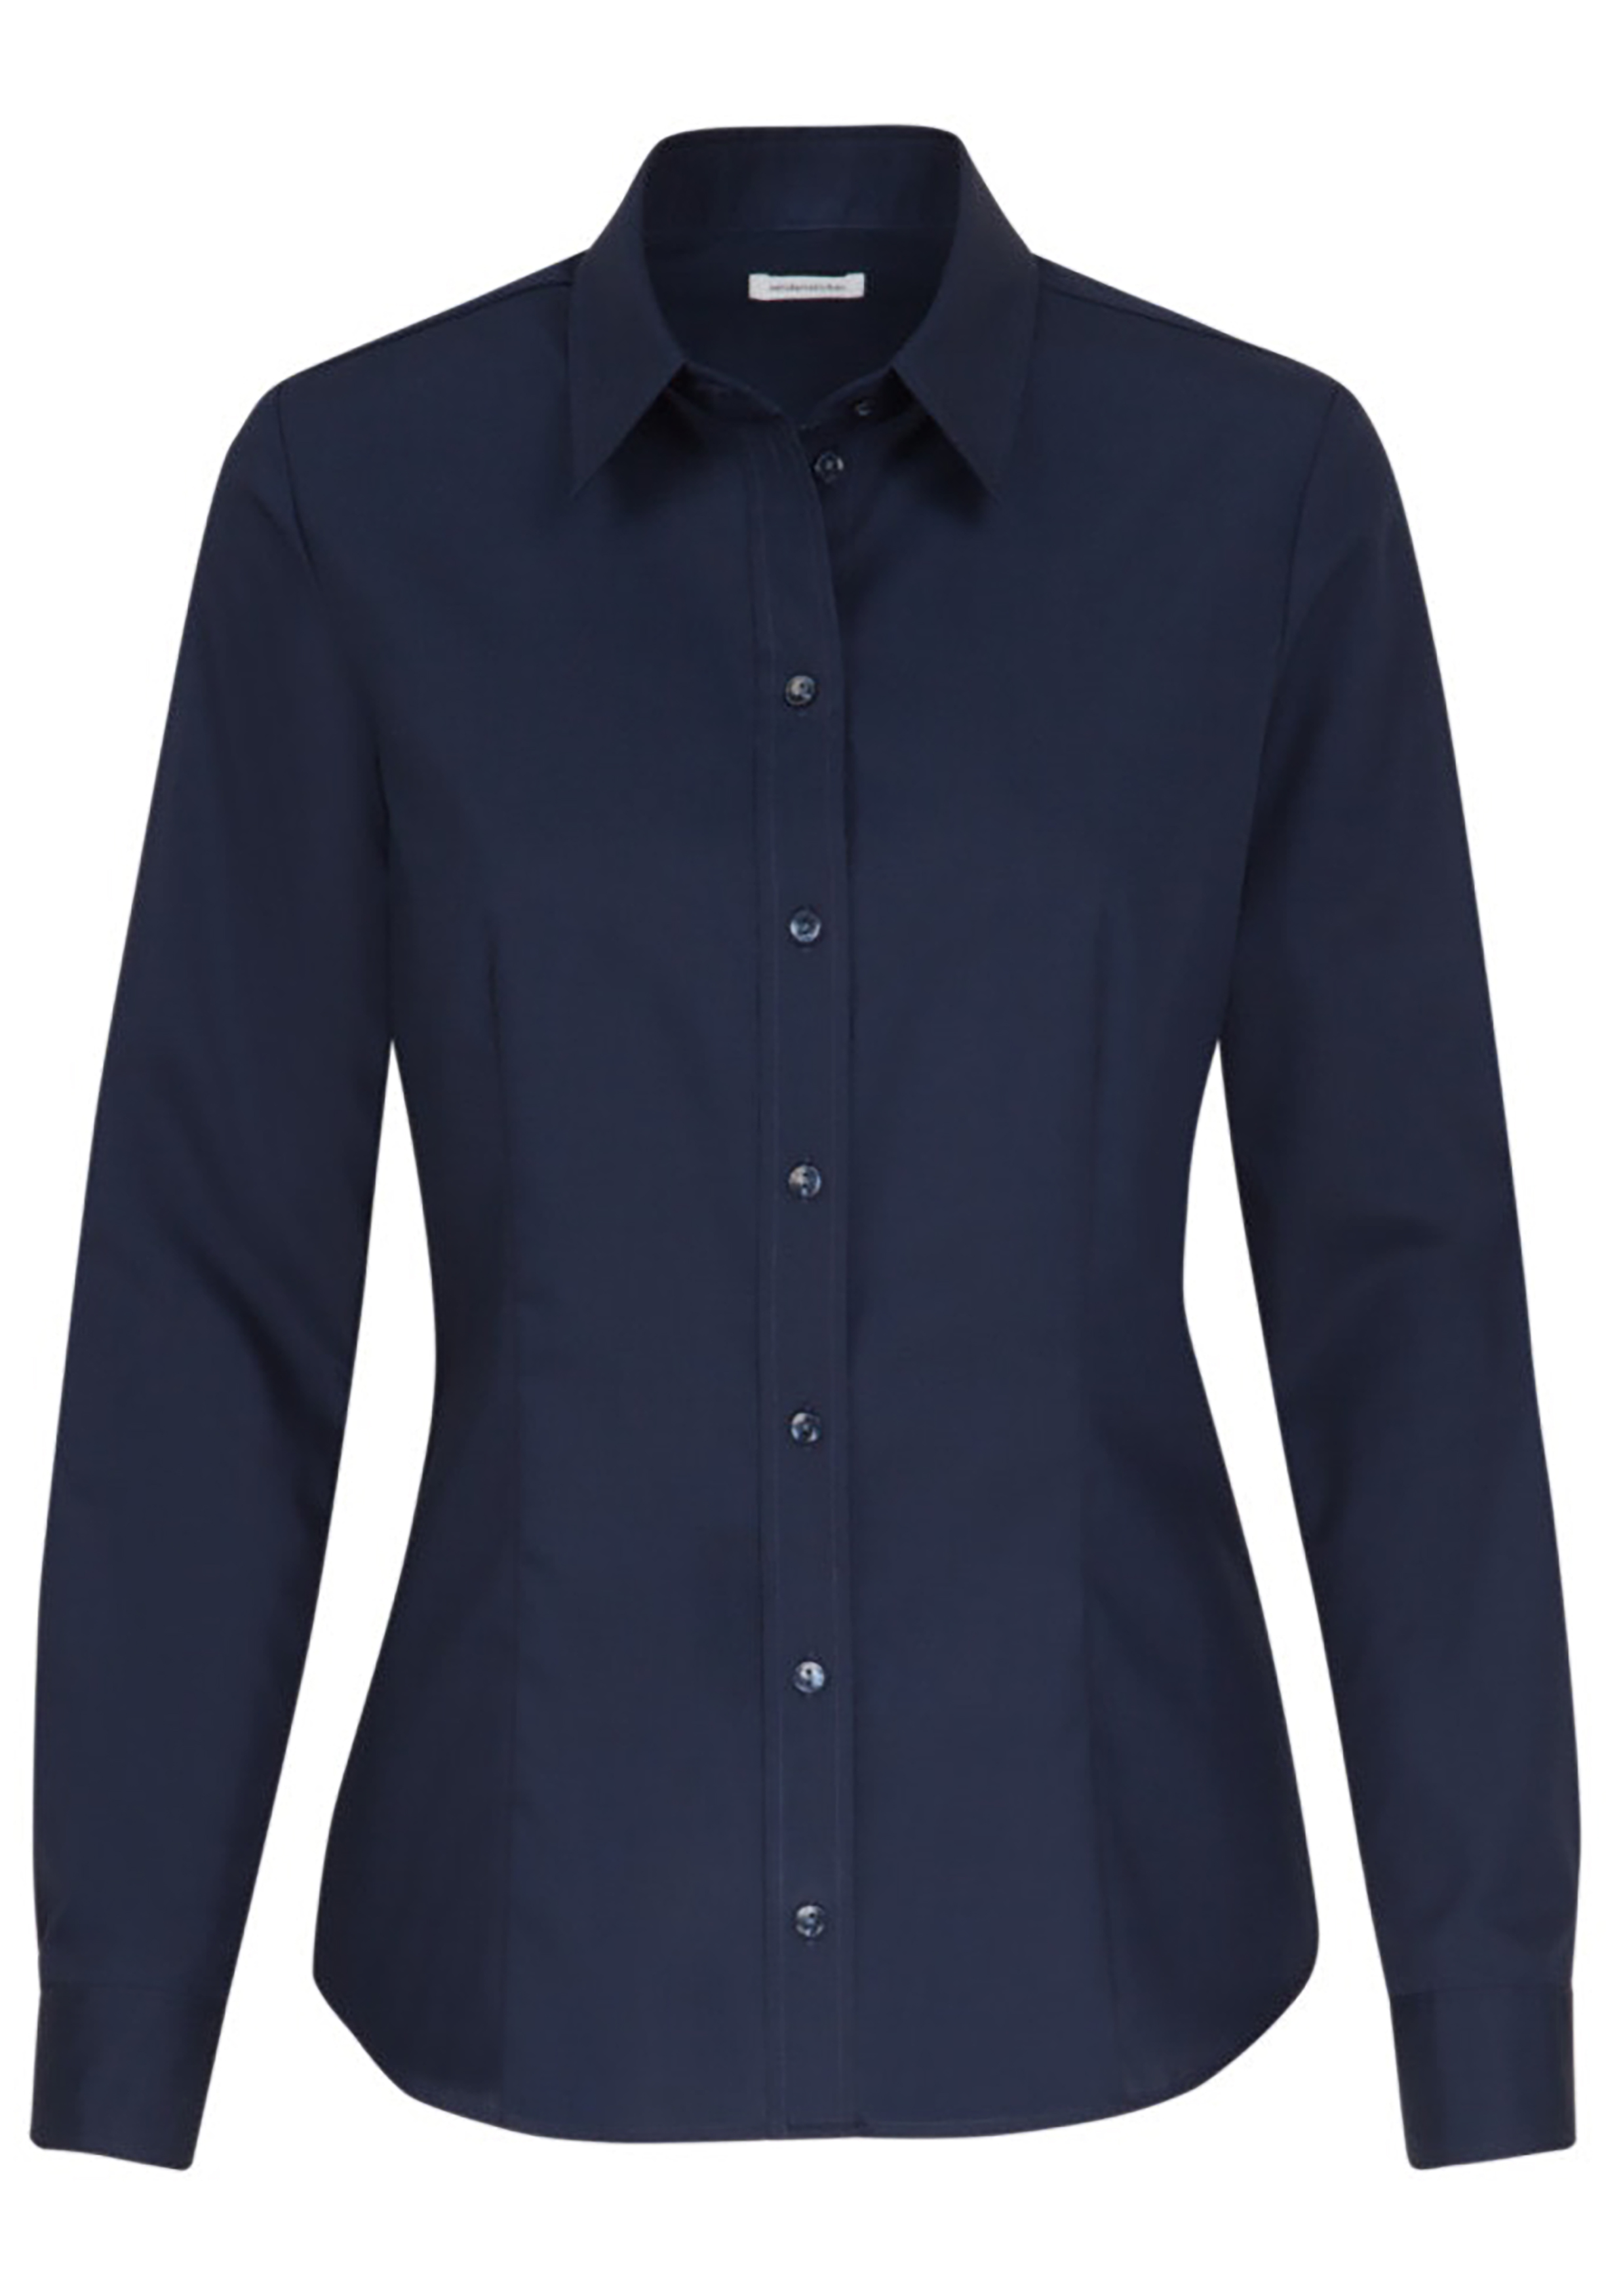 Annoteren Cumulatief Onderzoek Seidensticker dames blouse regular fit, donkerblauw - Shop de nieuwste  voorjaarsmode